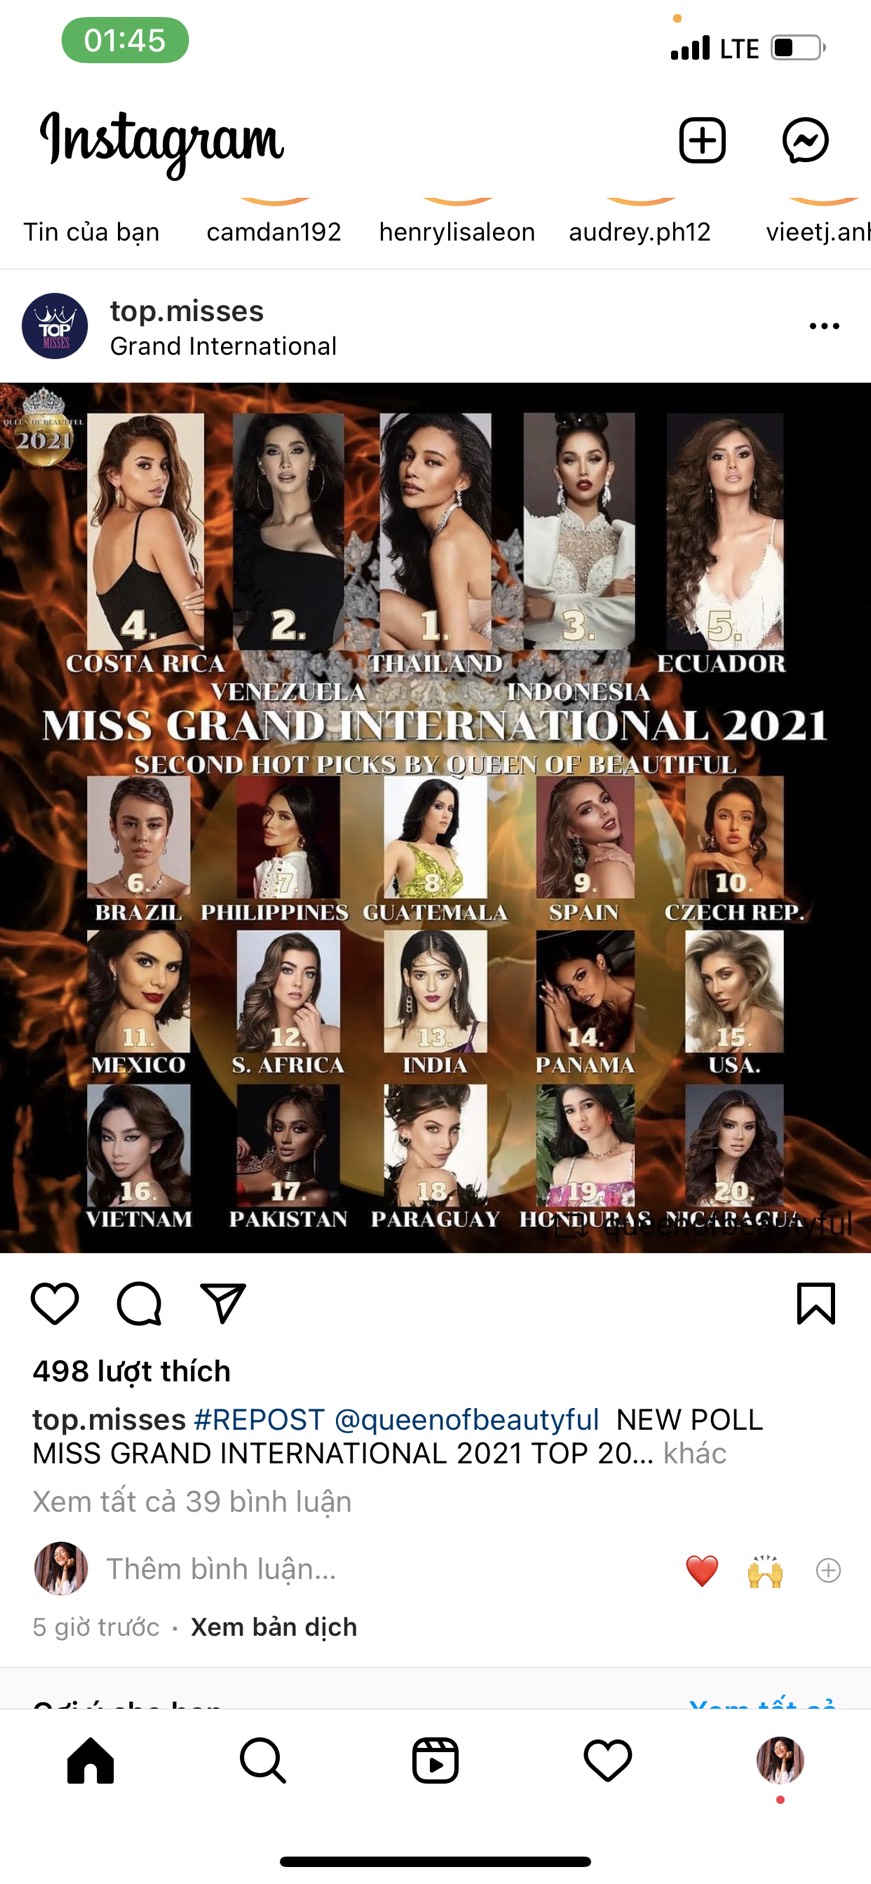 Chuyên trang sắc đẹp Top Misses vừa đăng tải bảng dự đoán Miss Grand International cách đây ít giờ